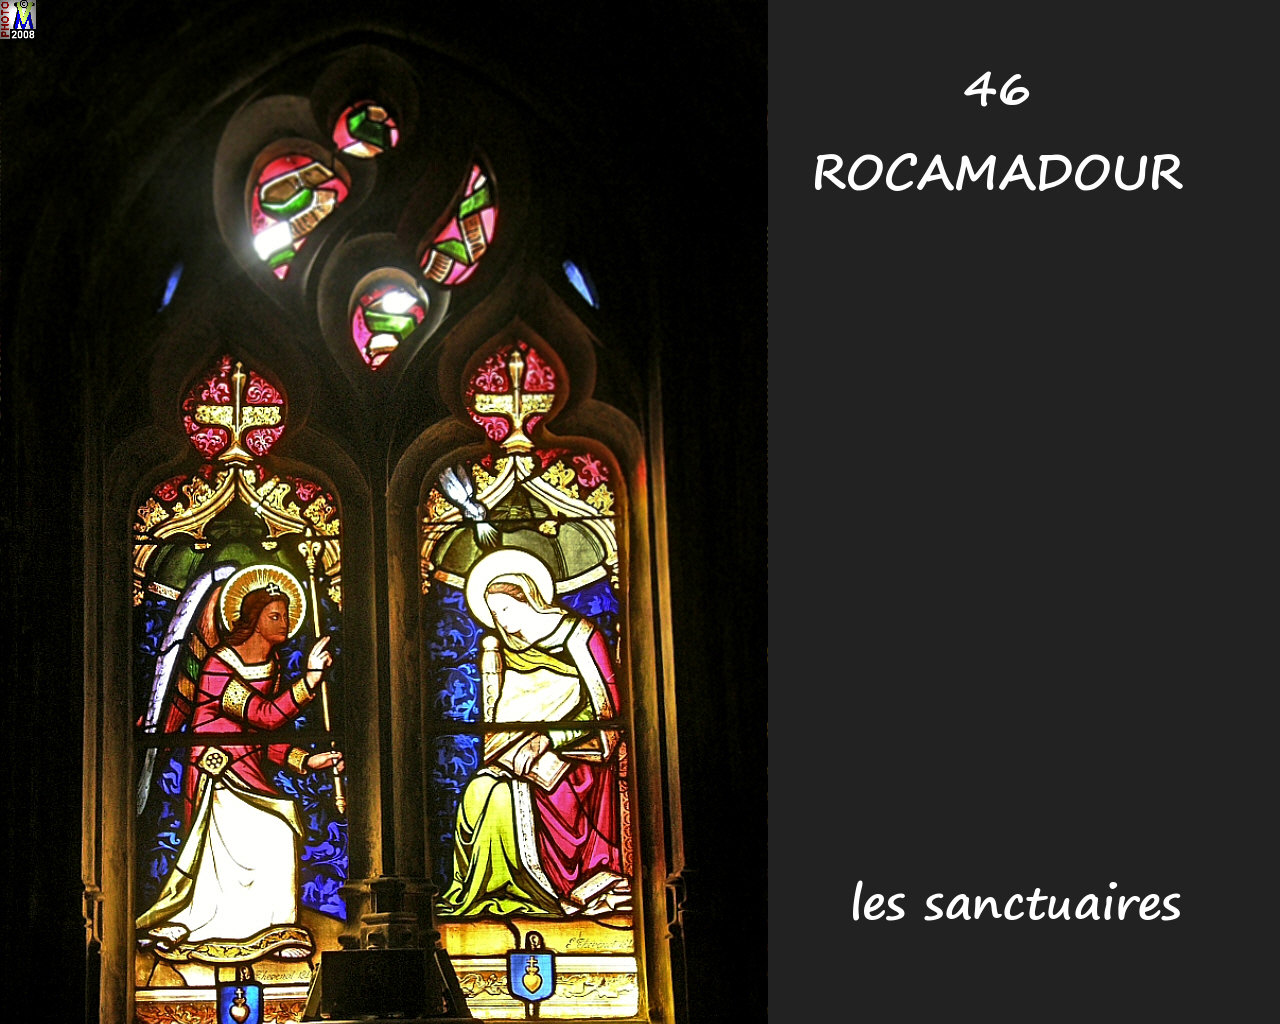 46ROCAMADOUR_sanctuaires_630.jpg